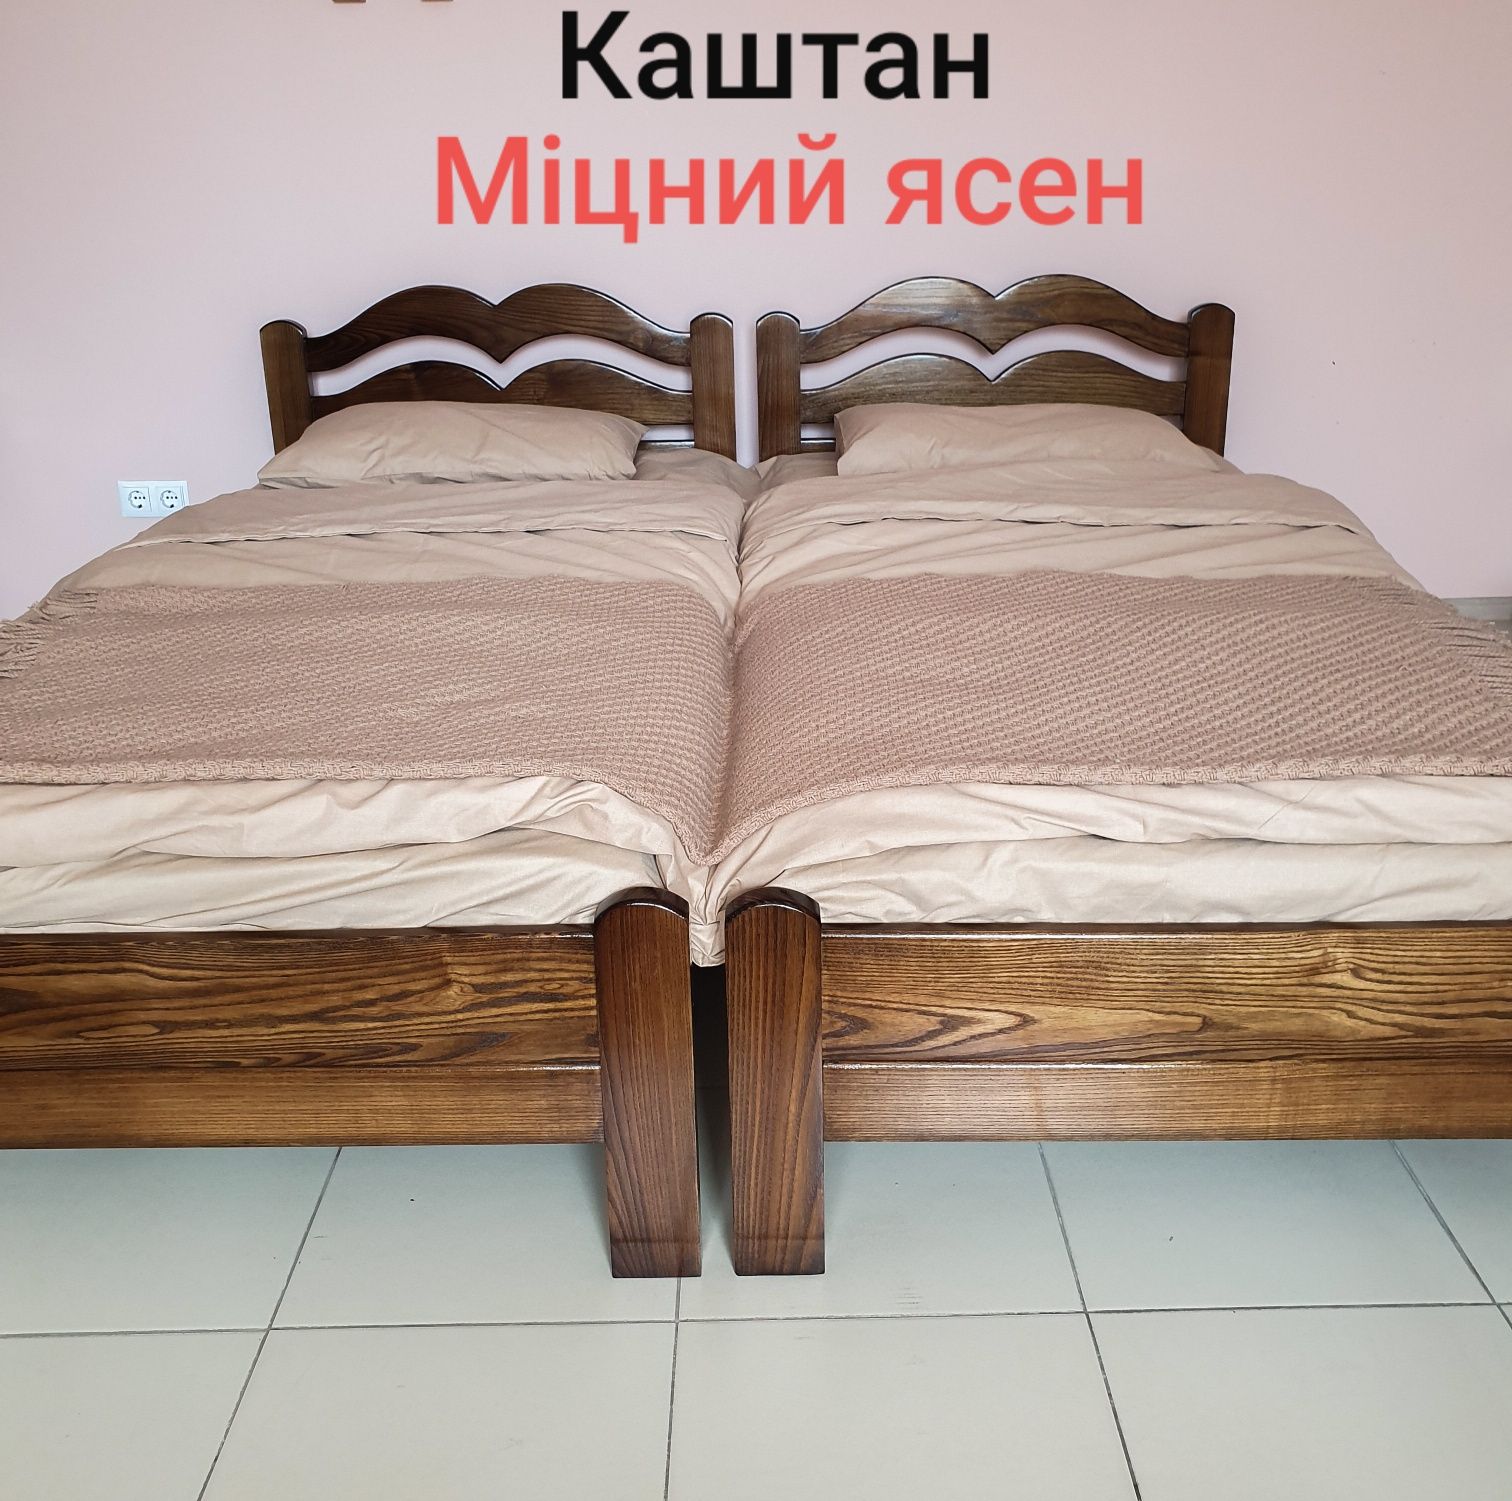 Ліжко двоспальне,дерев'яне(ясен),140/200;160/200;180/200